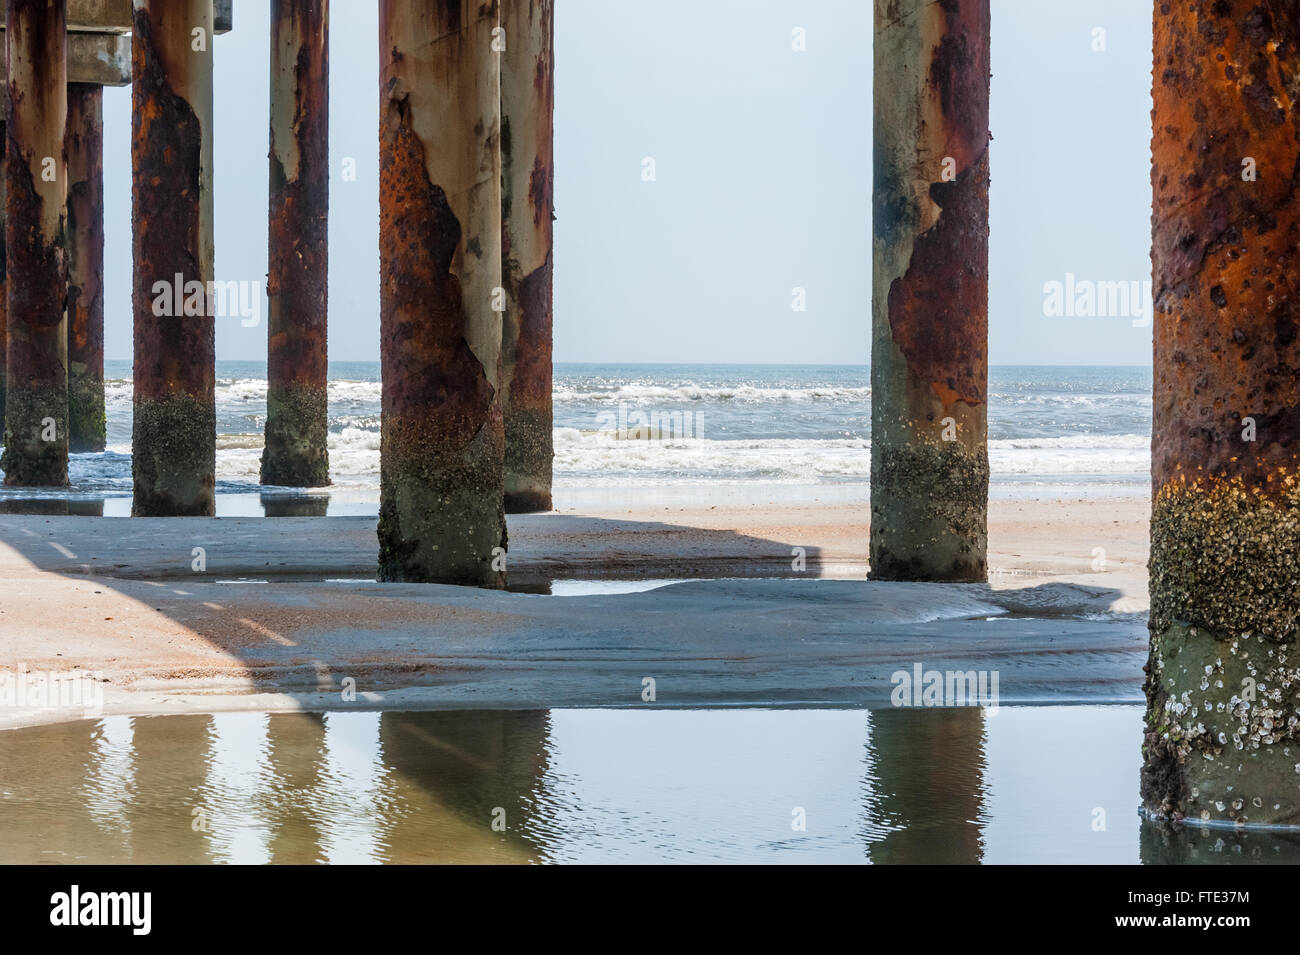 Meerblick durch verrostete Pfähle in St. Augustine Pier in St. Augustine, Florida, USA. Stockfoto